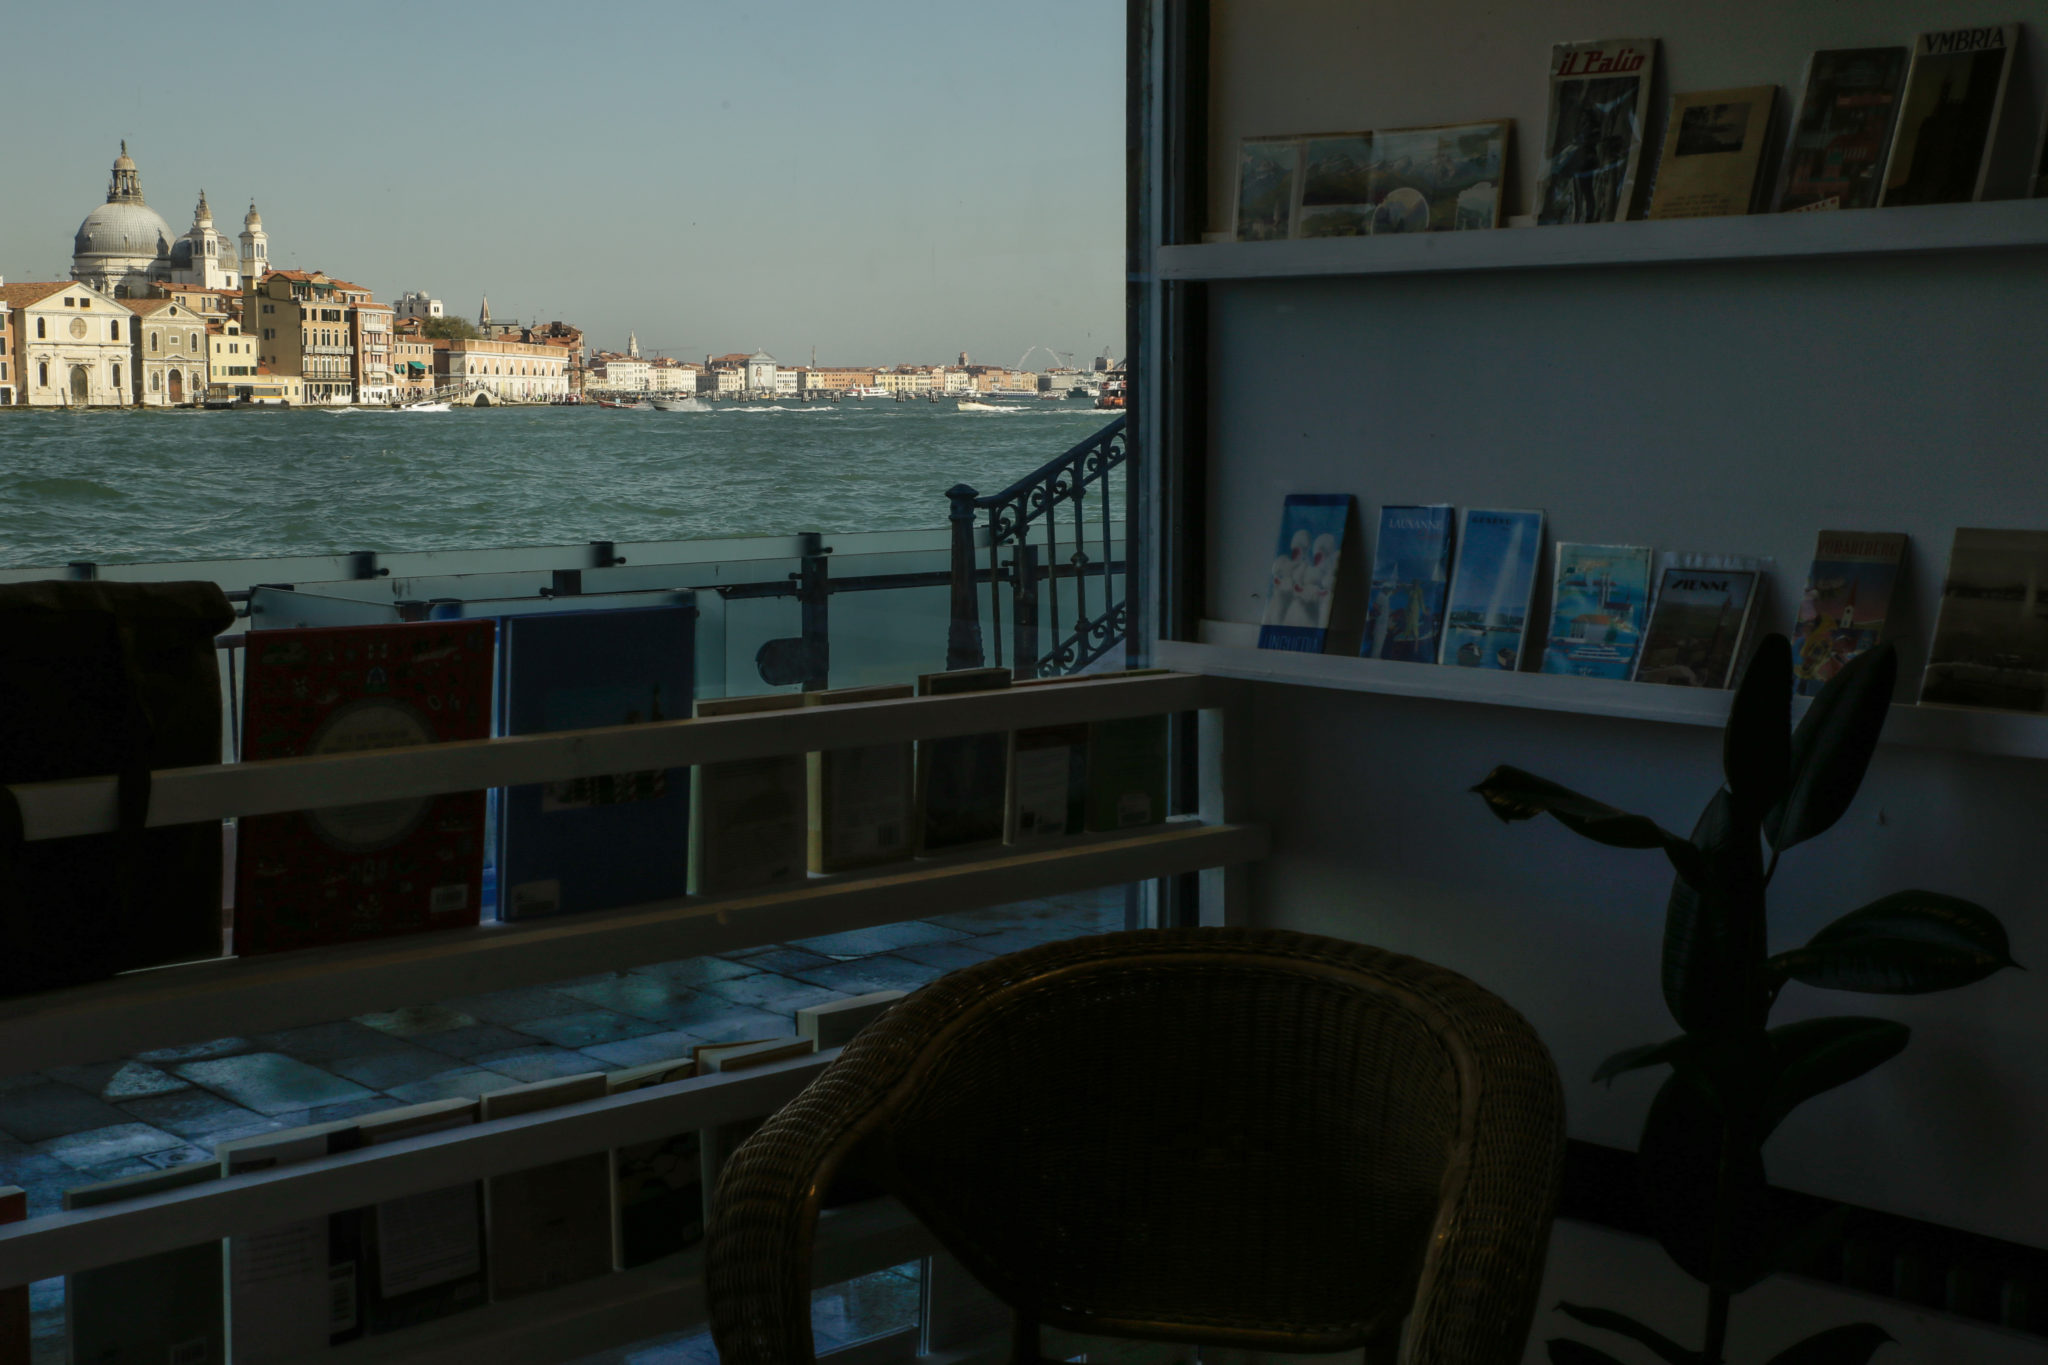 La Giudecca è un'isola a sud di Venezia, costituita da otto isole minori collegate fra loro. L'abbiamo visitata per scoprire un'altra Venezia 